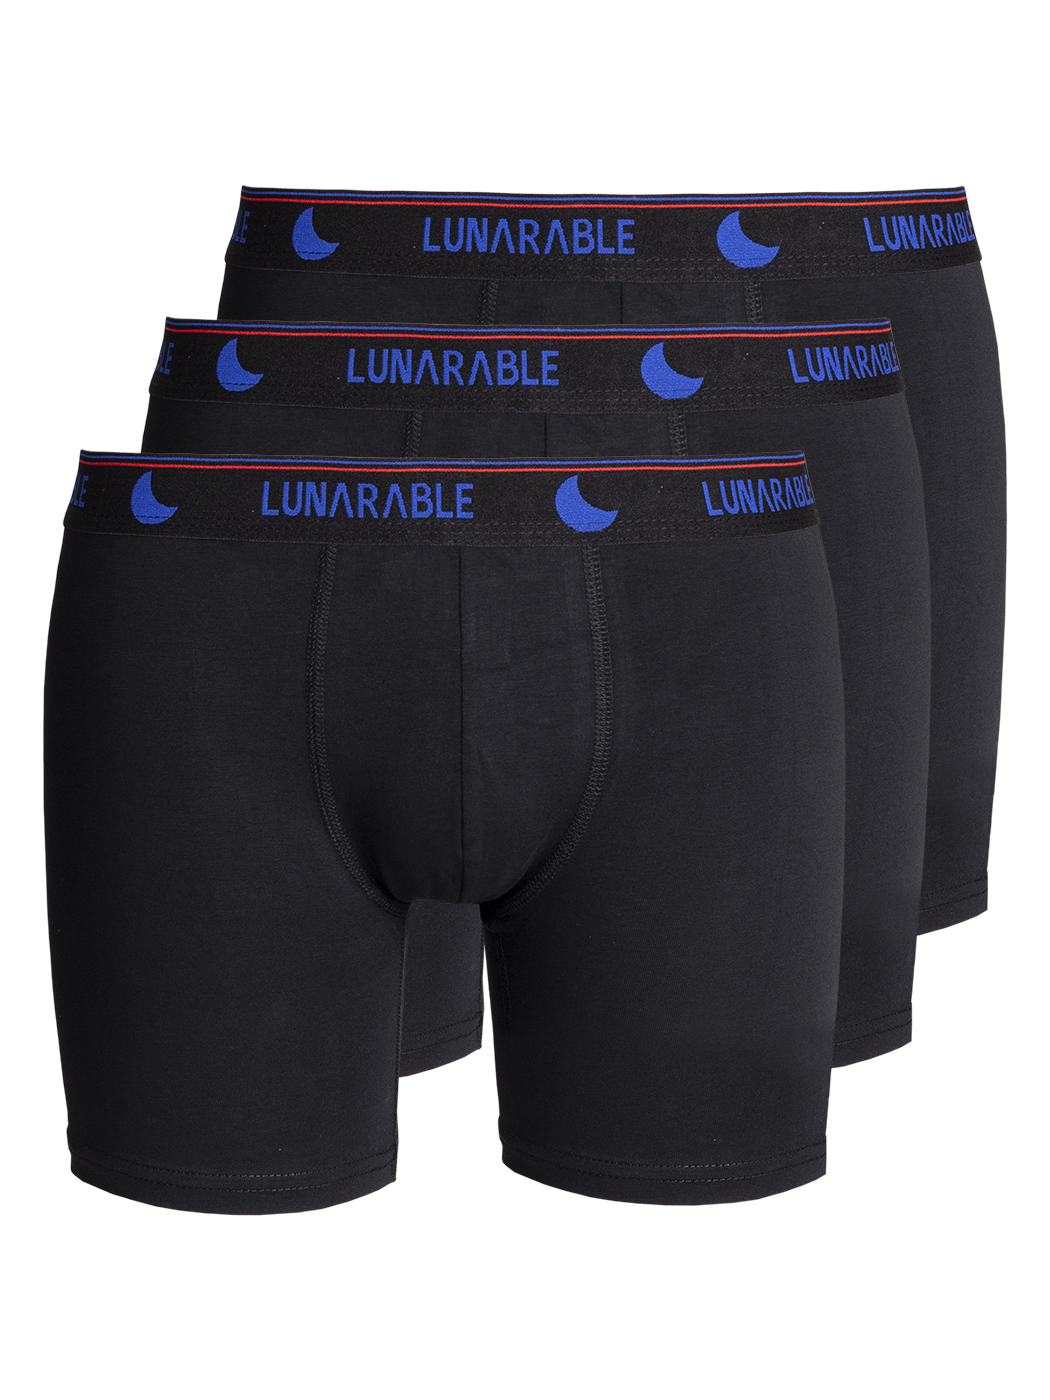 Комплект трусов мужских Lunarable ebox180_ черных L